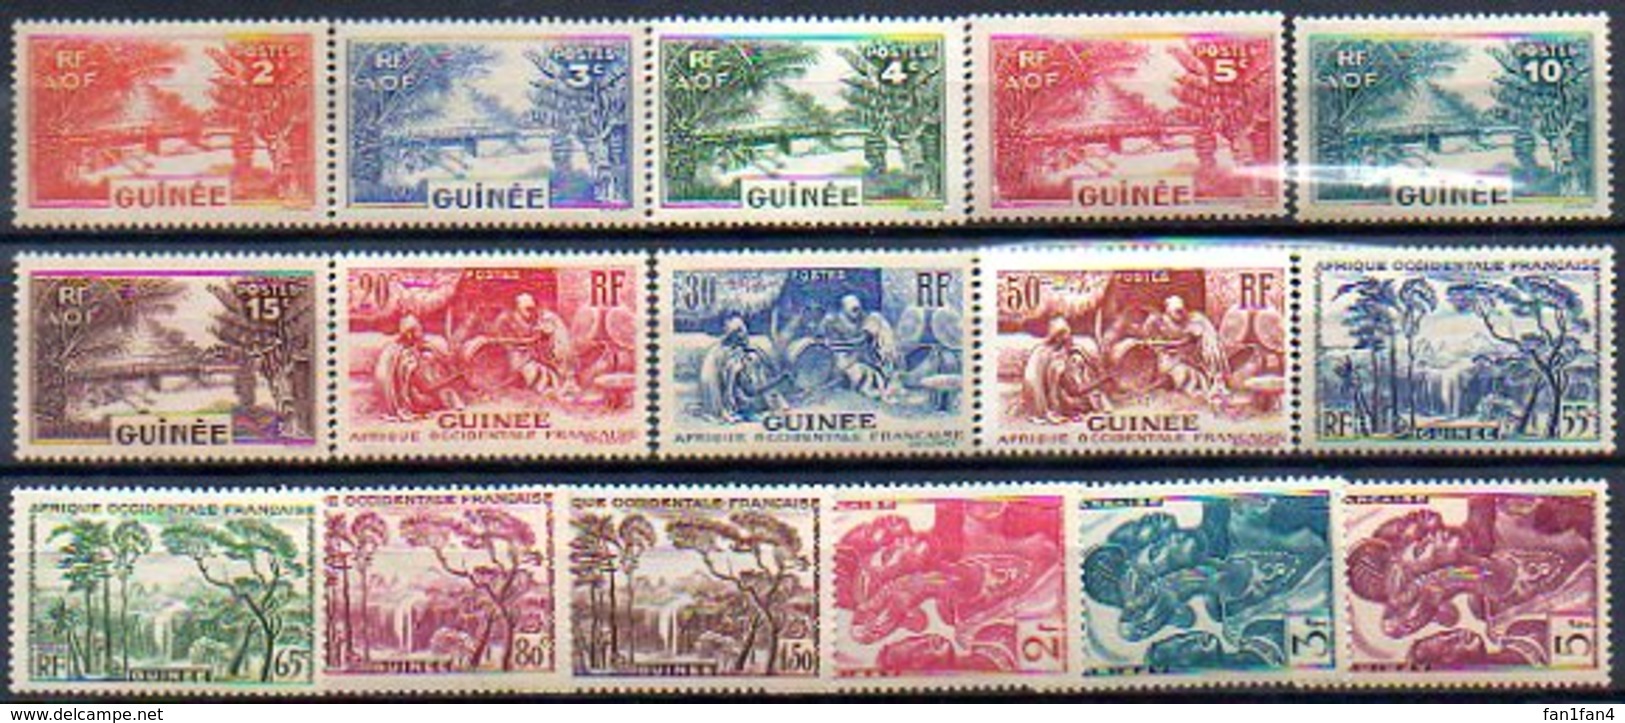 Colonies Françaises Et Protectorats (GUINEE) - 1938 - N° 125 à 144 - (Lot De 16 Valeurs Différentes) - Unused Stamps